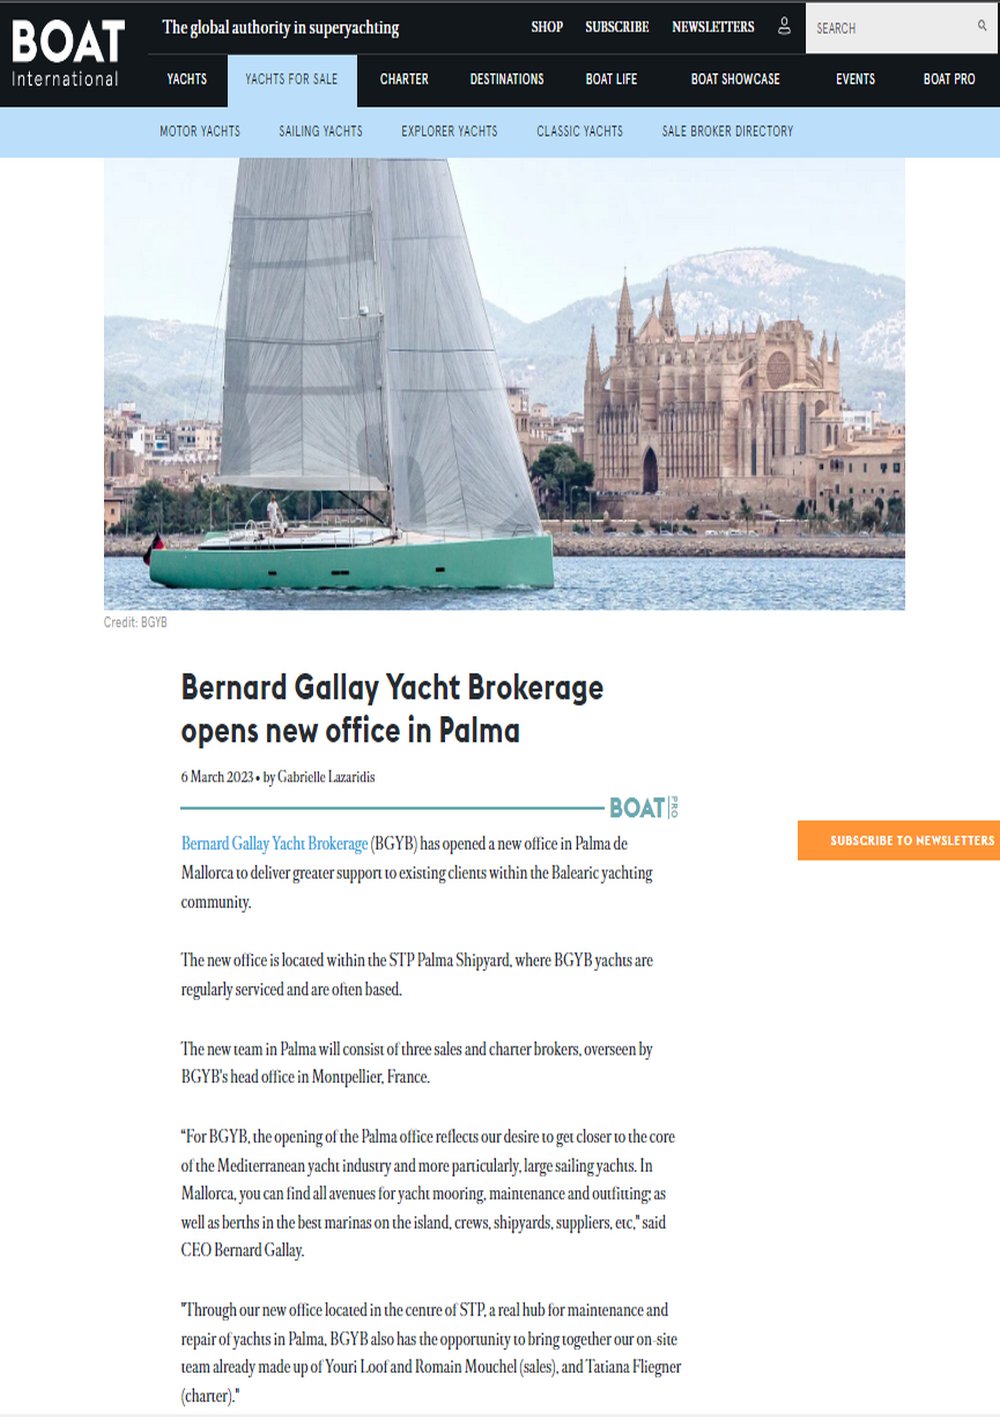 Le magazine Boat International annonce l'ouverture du nouveau bureau BGYB à Palma